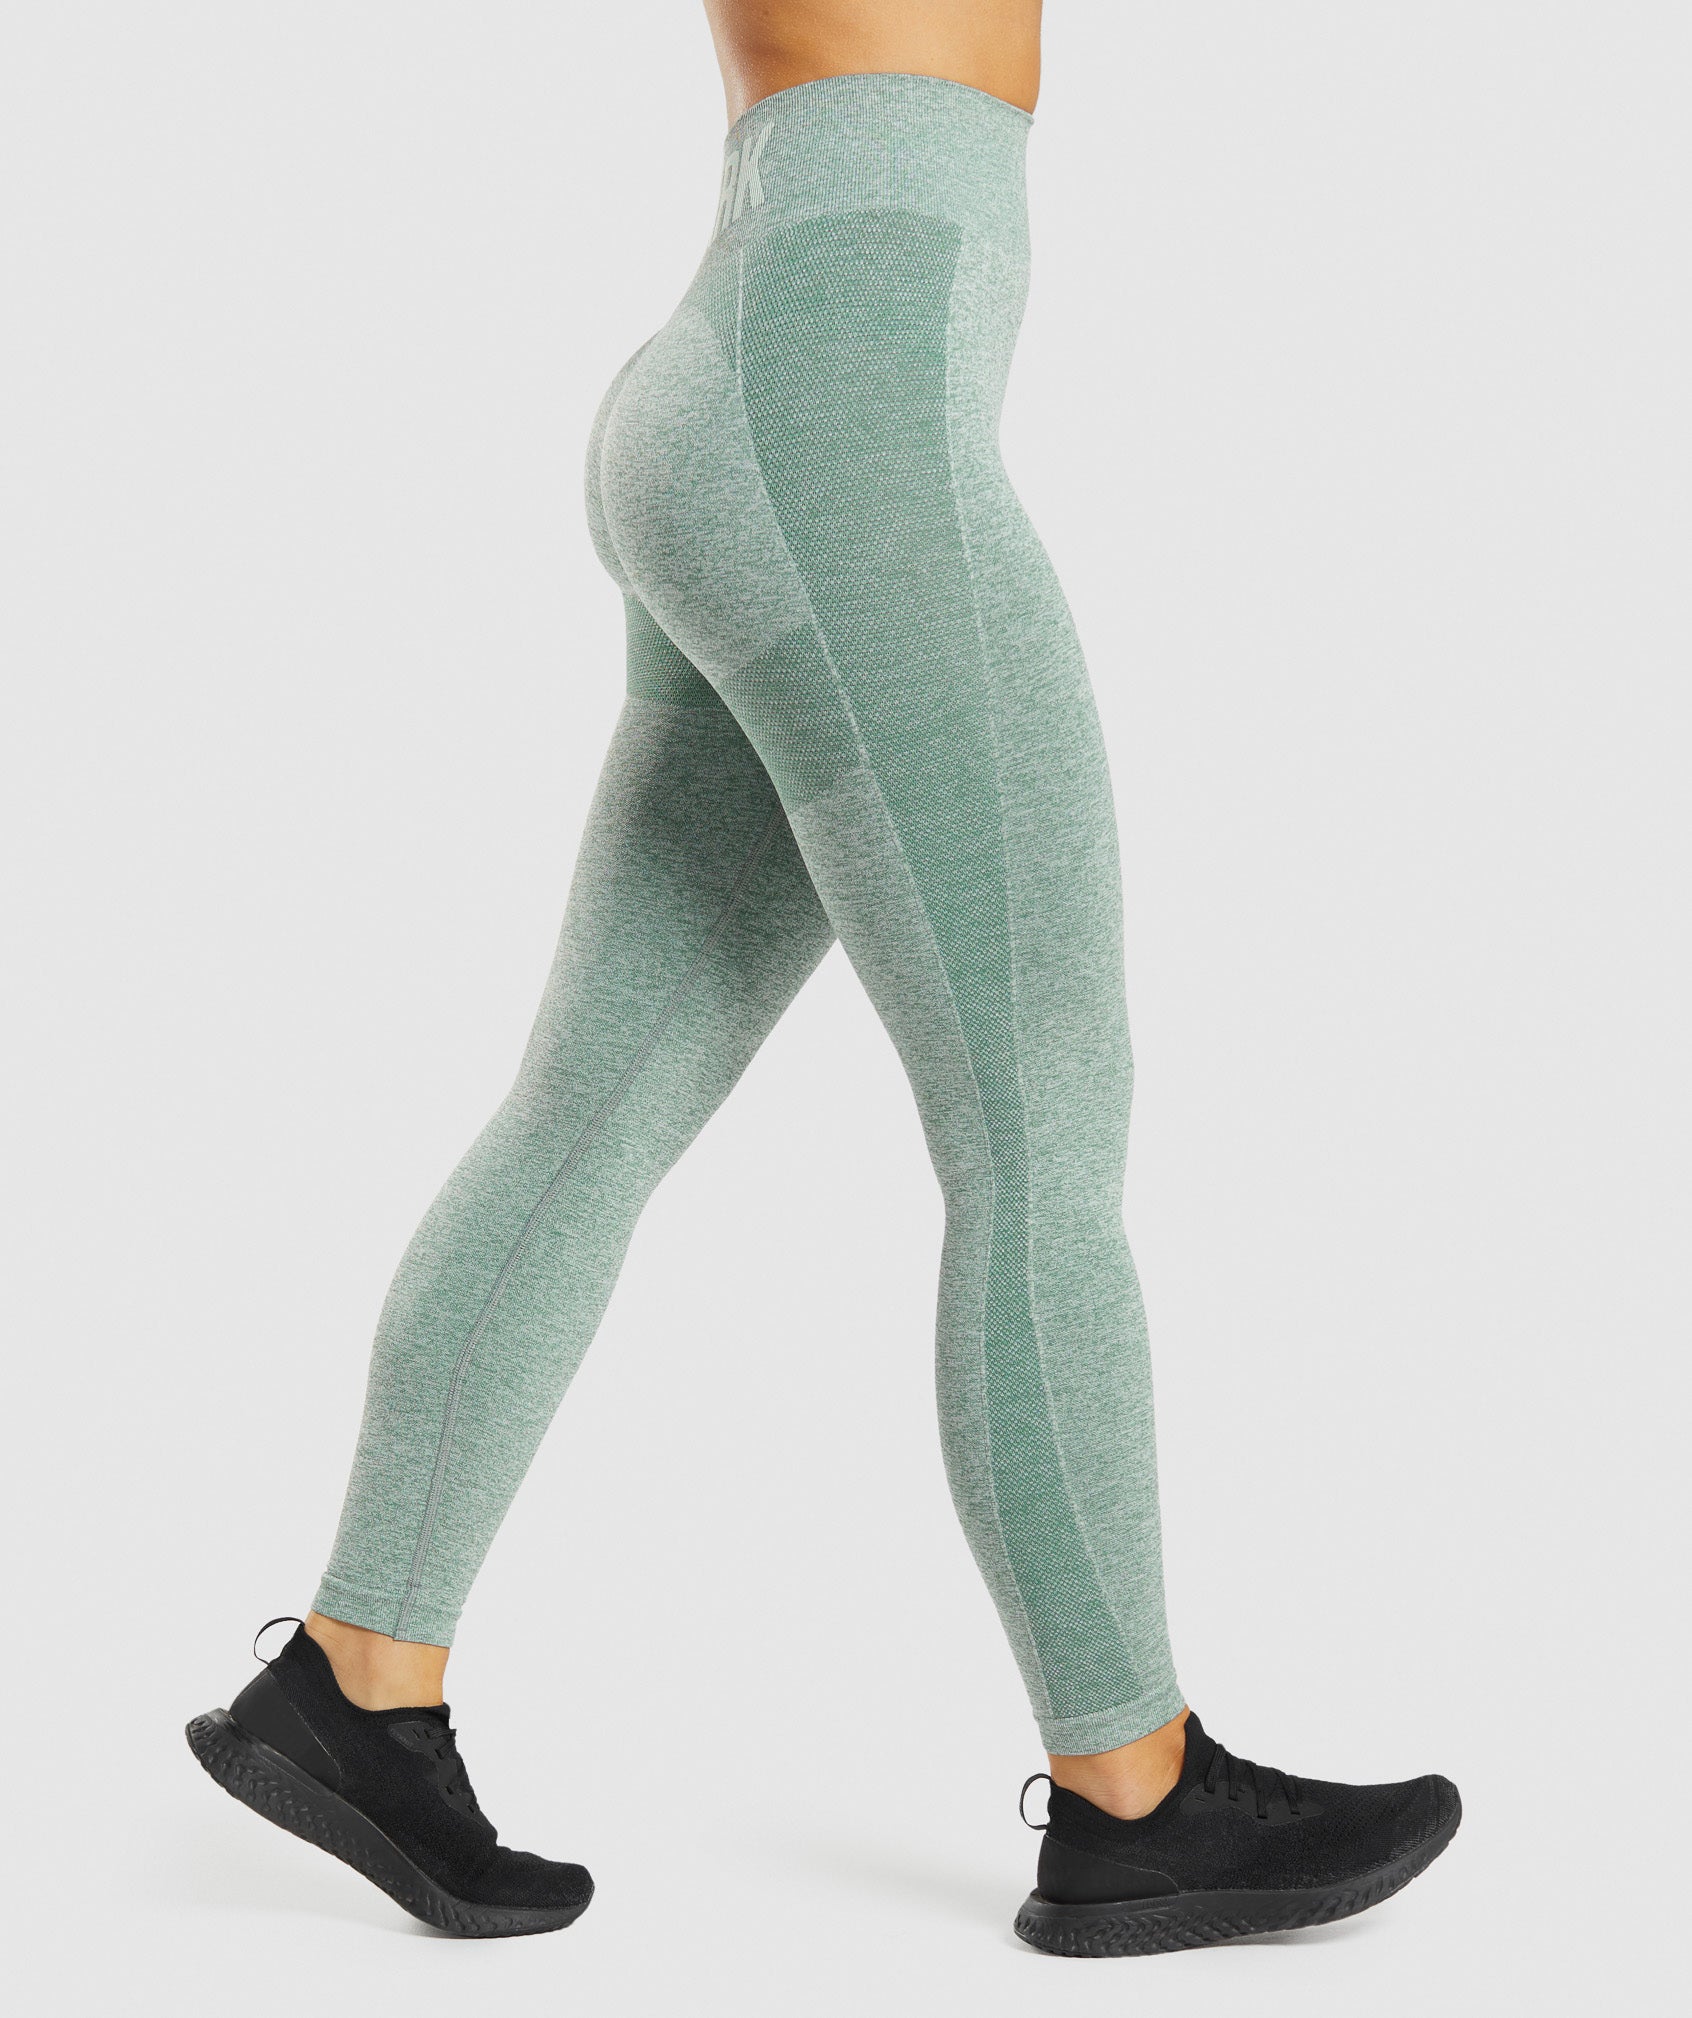 Gymshark Flex Leggings - Khaki/Sand  Flex leggings, Gymshark flex leggings,  Womens workout outfits